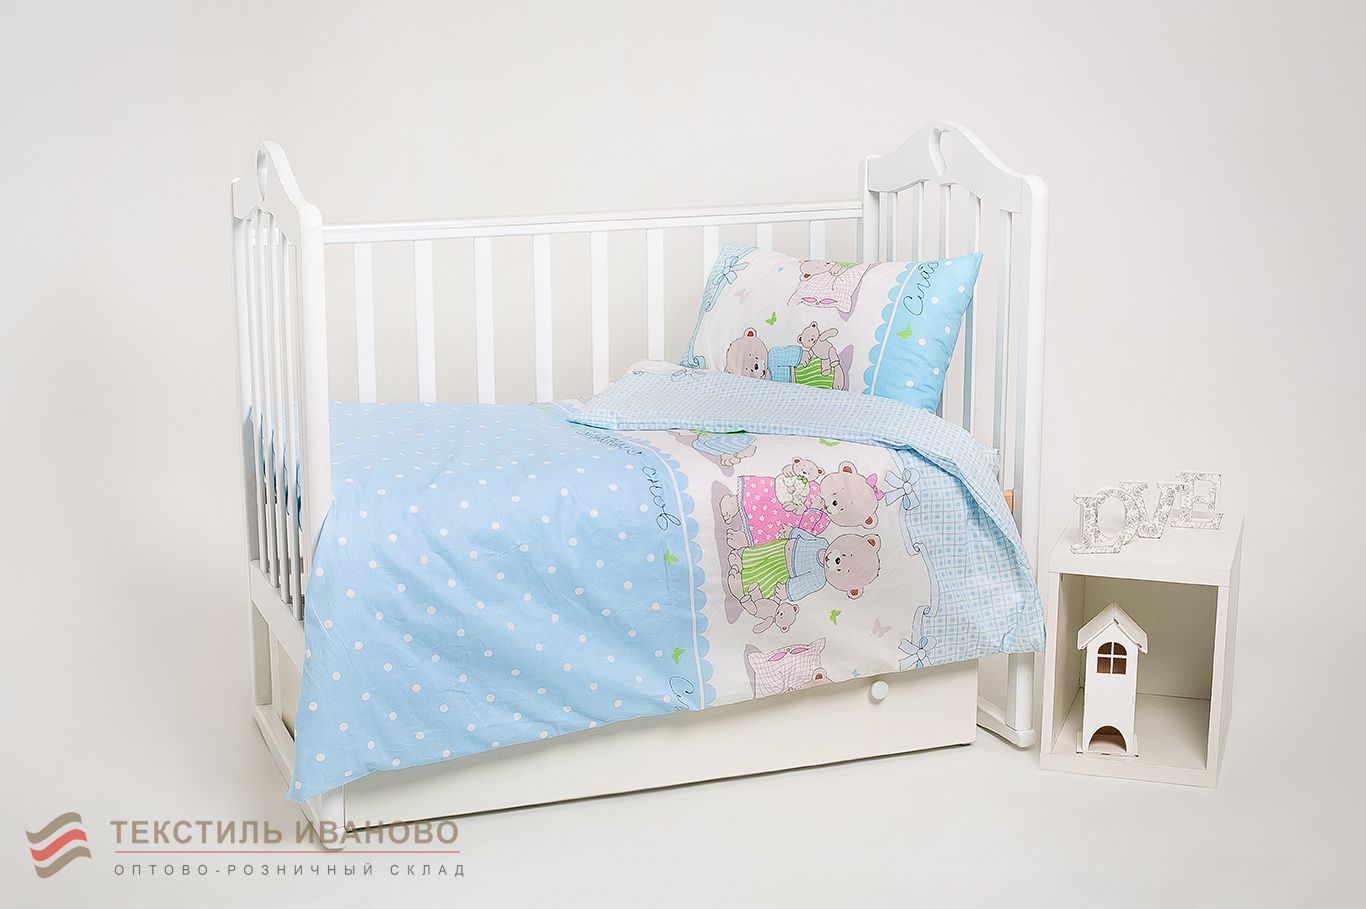  Комплект детского постельного белья Мишкина семья ясельный поплин люкс, фото 1 